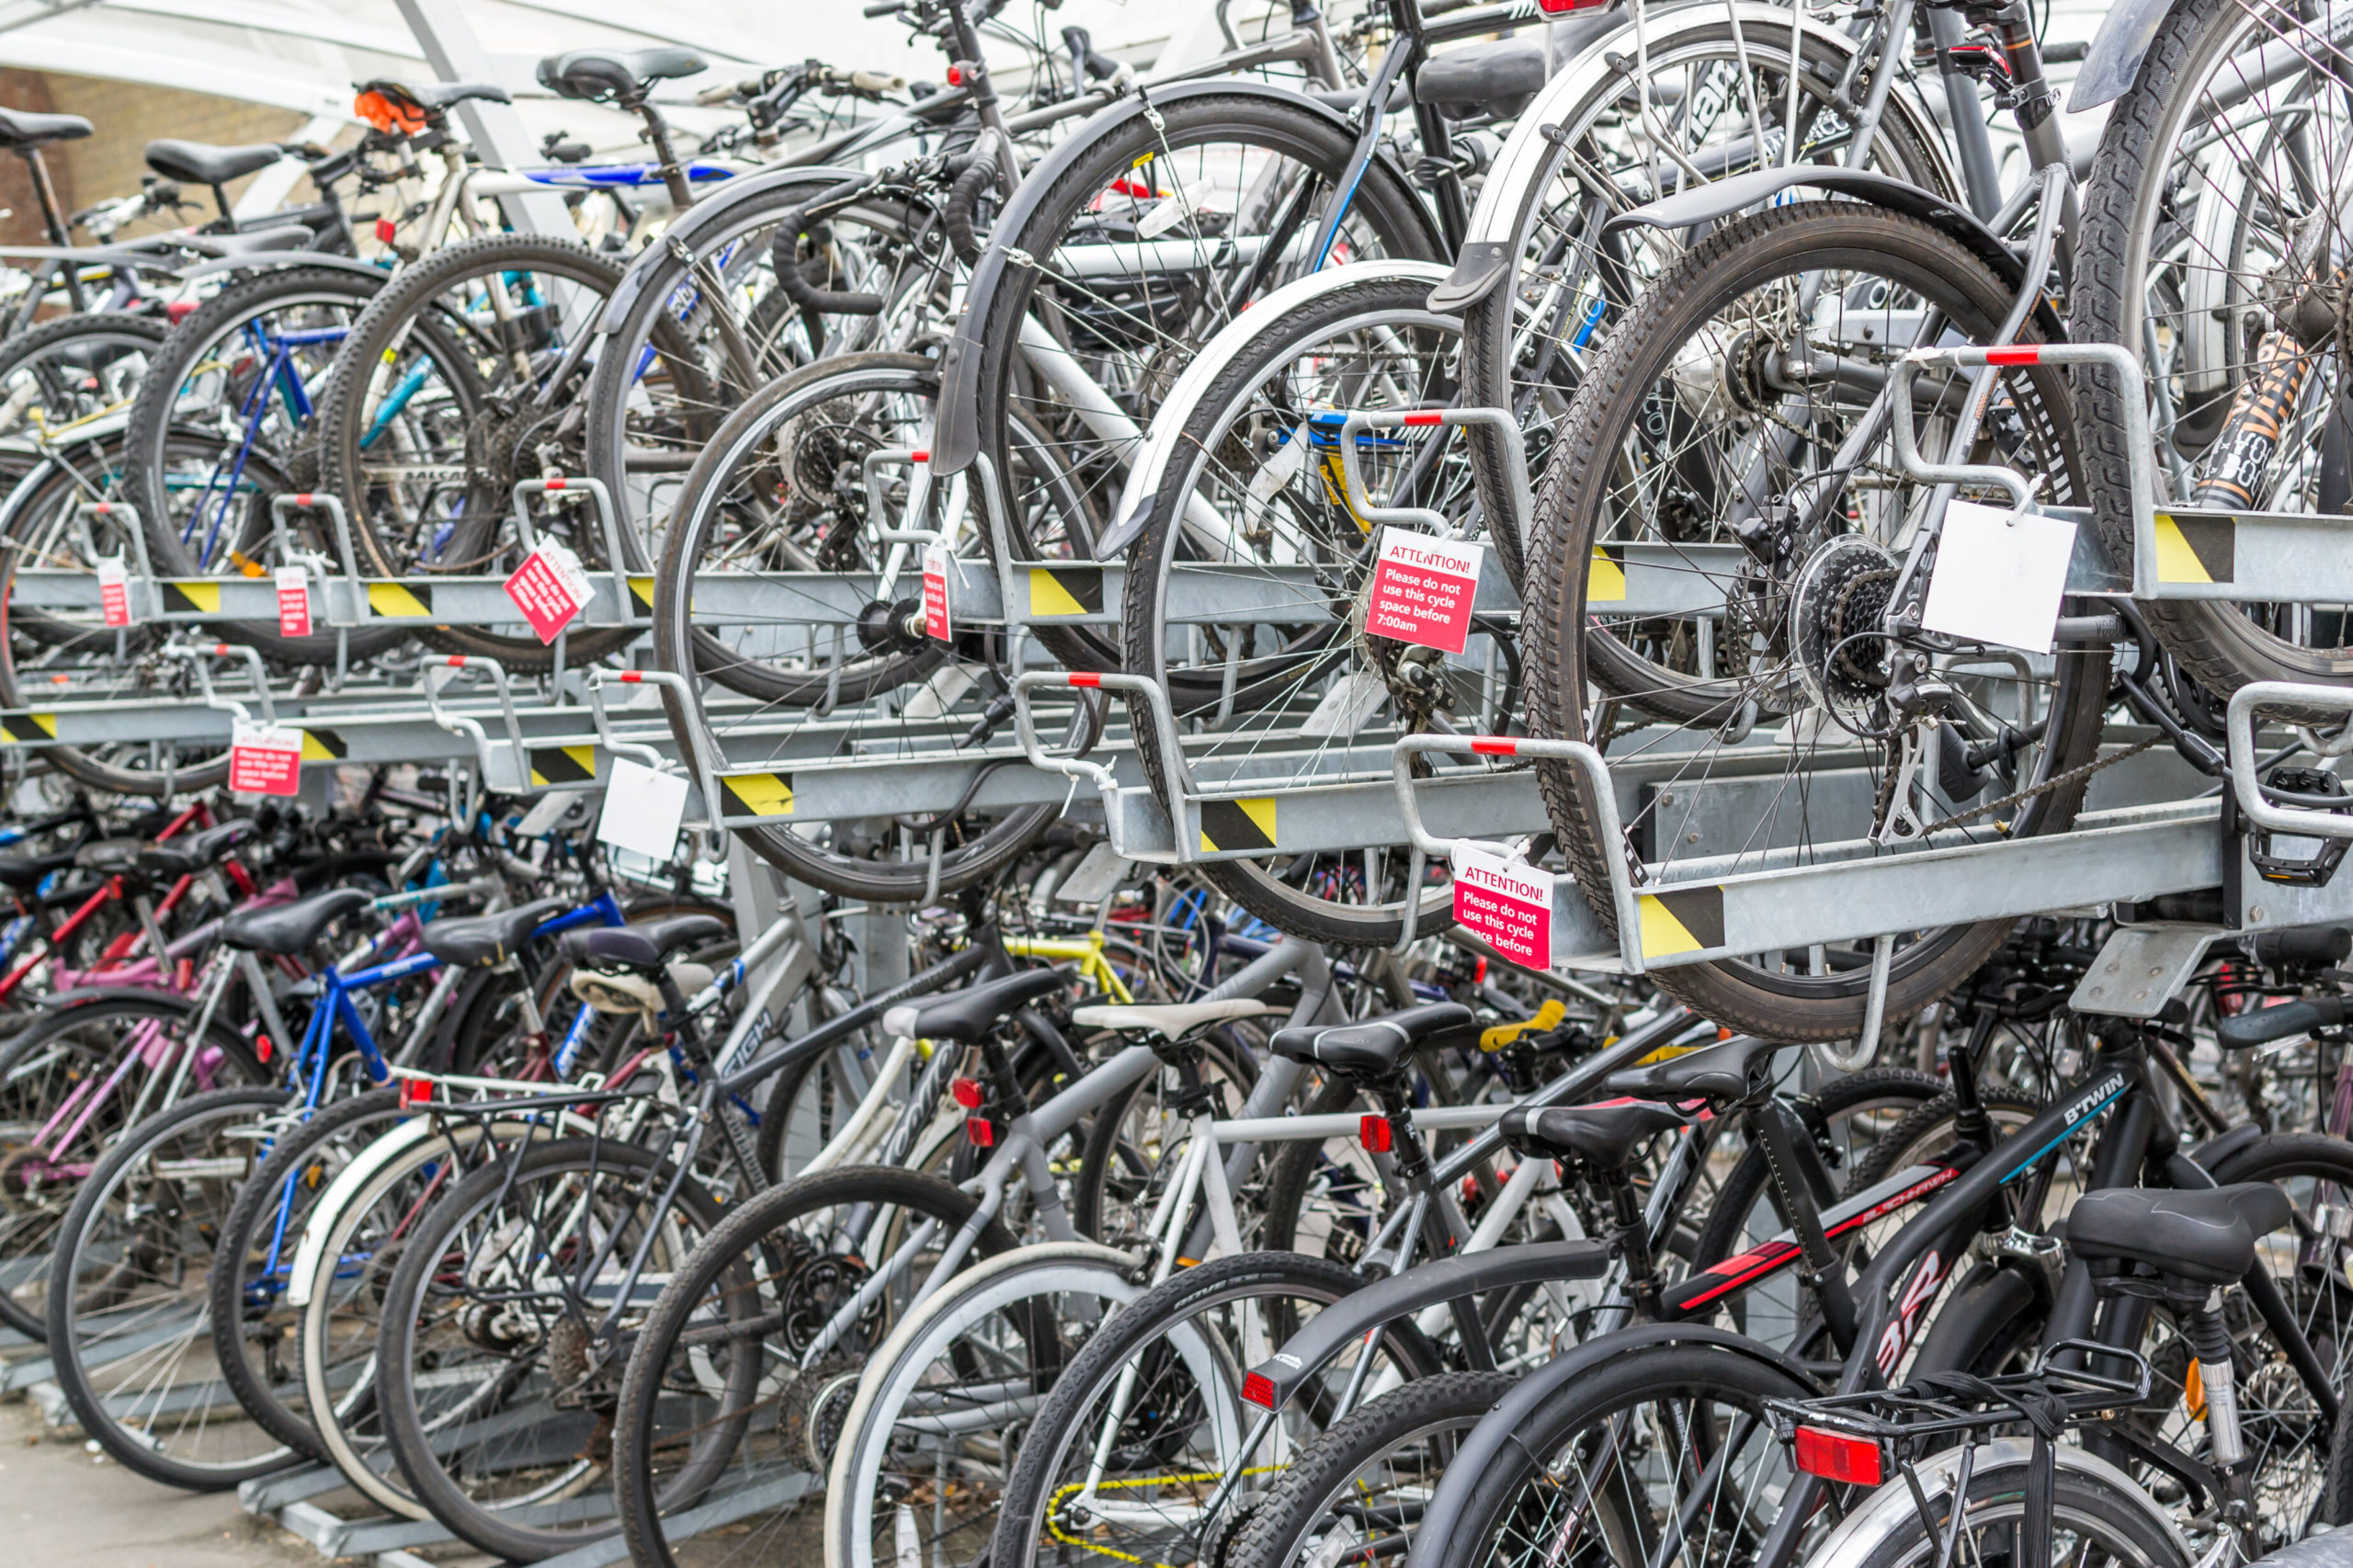 Le plan directeur de Bruxelles prévoit 10 000 places de stationnement pour vélos